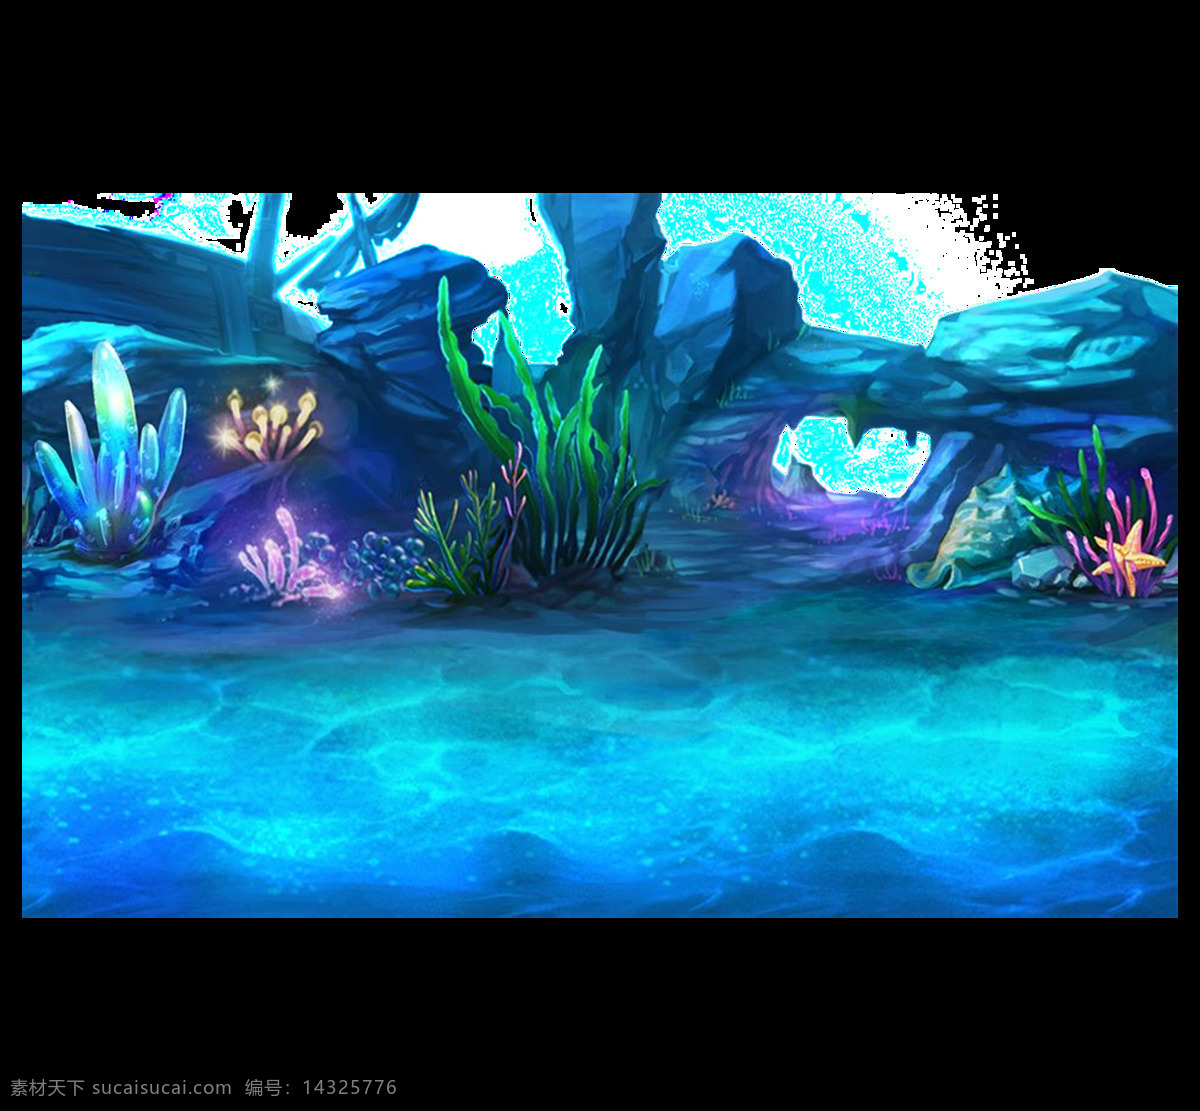 炫 蓝 海底 景观 图 元素 png元素 海报 海洋世界 免抠元素 童趣 透明元素 游戏场景